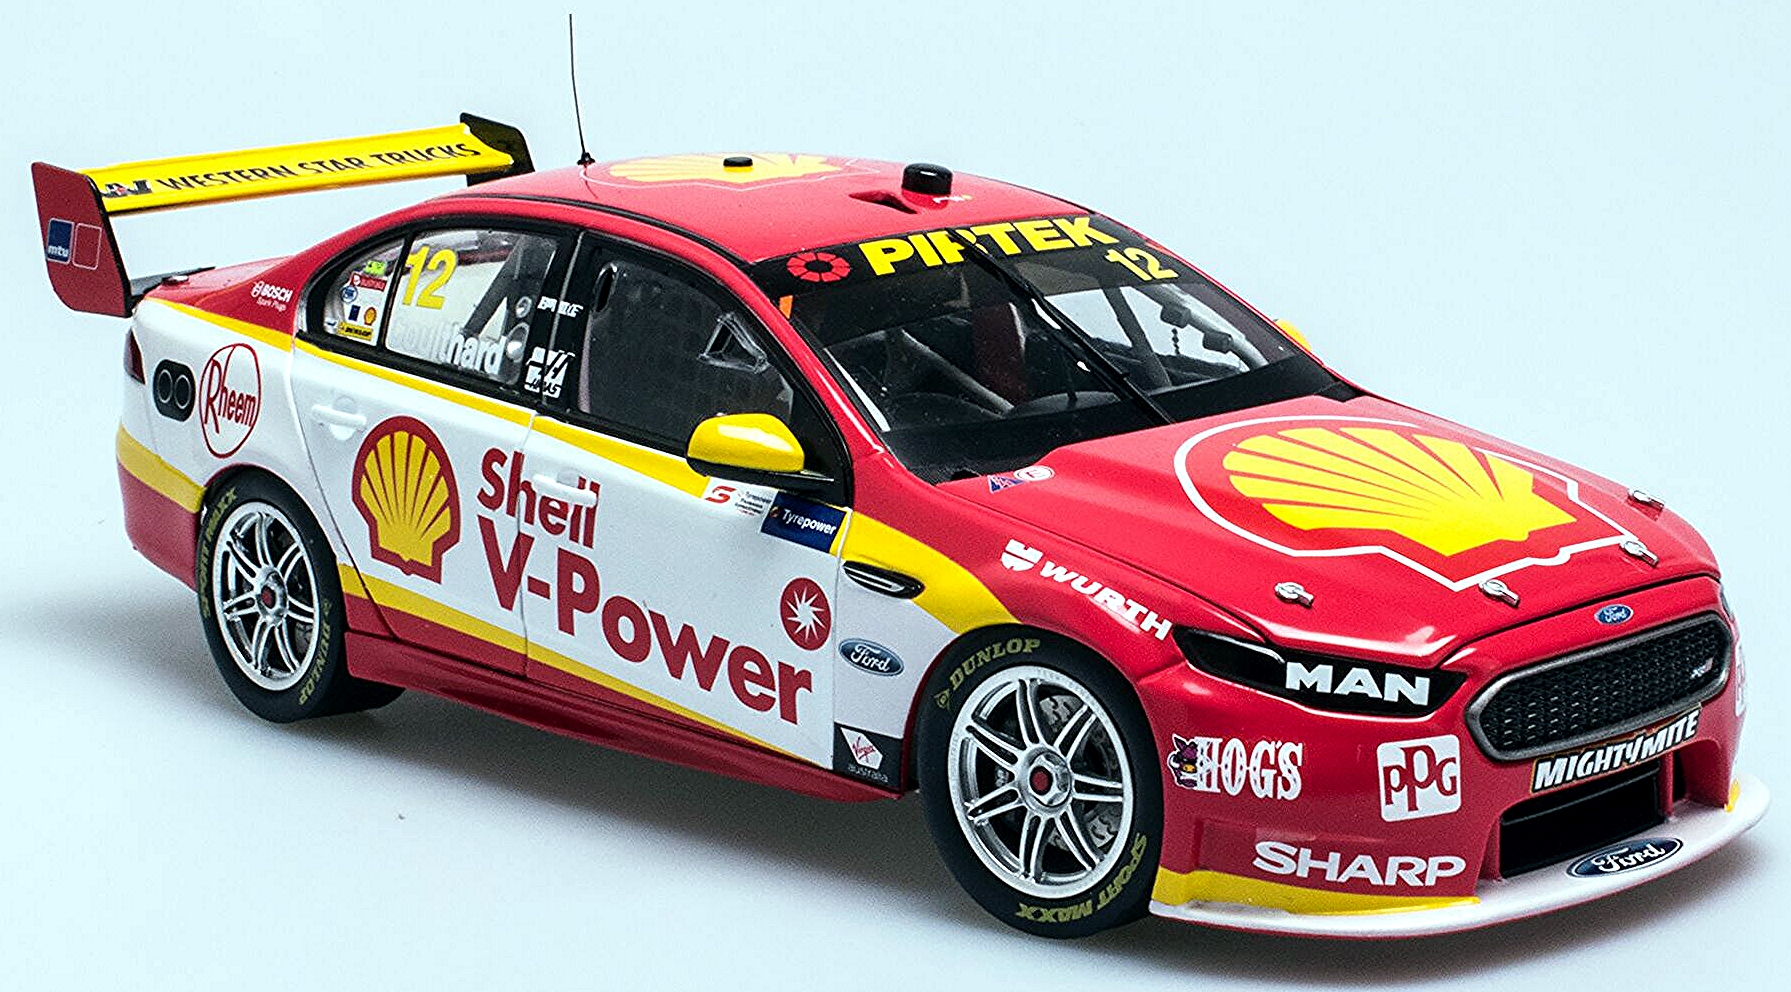 Машинки высотой 80 см. Shell Racing машинки. Shell v Power Racing. Shell машинки на управлении. Коллекция гоночных машин.